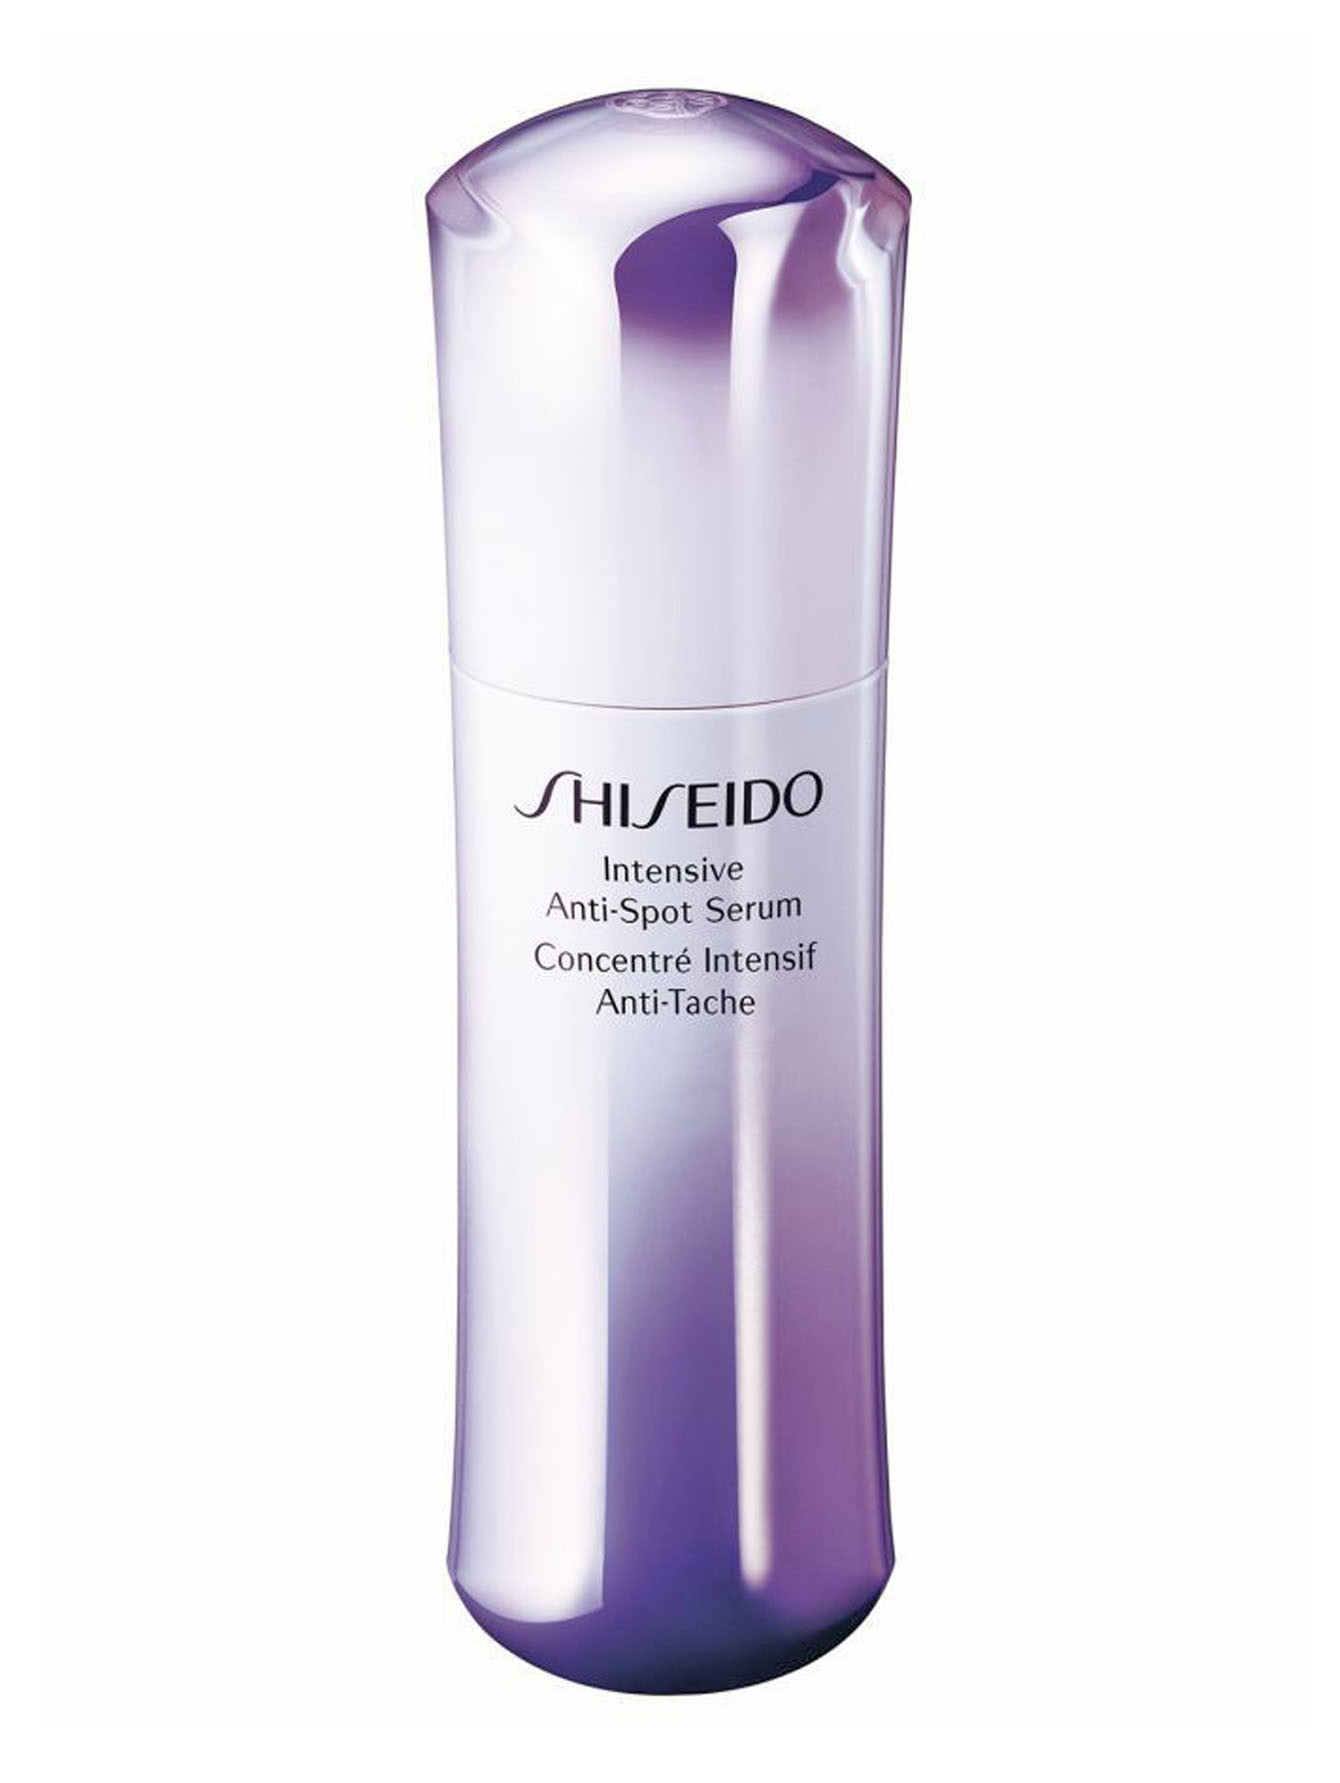 Cыворотка интенсивного действия - Shiseido, 30ml - Общий вид